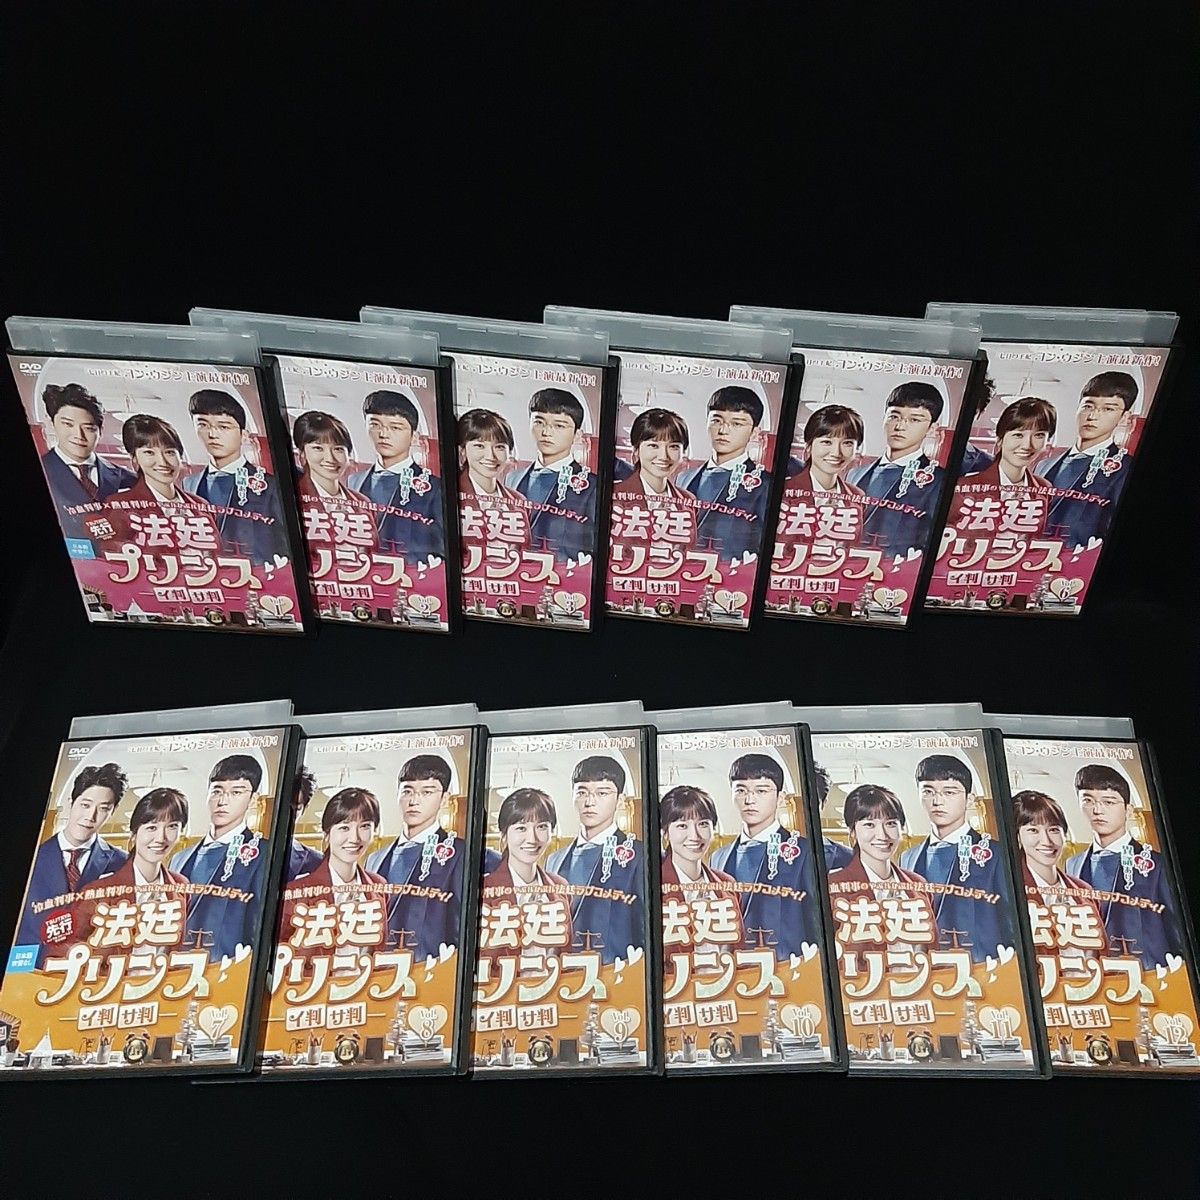 法廷プリンス イ判サ判 DVD 全巻セット 12巻 韓国ドラマ 韓流ドラマ